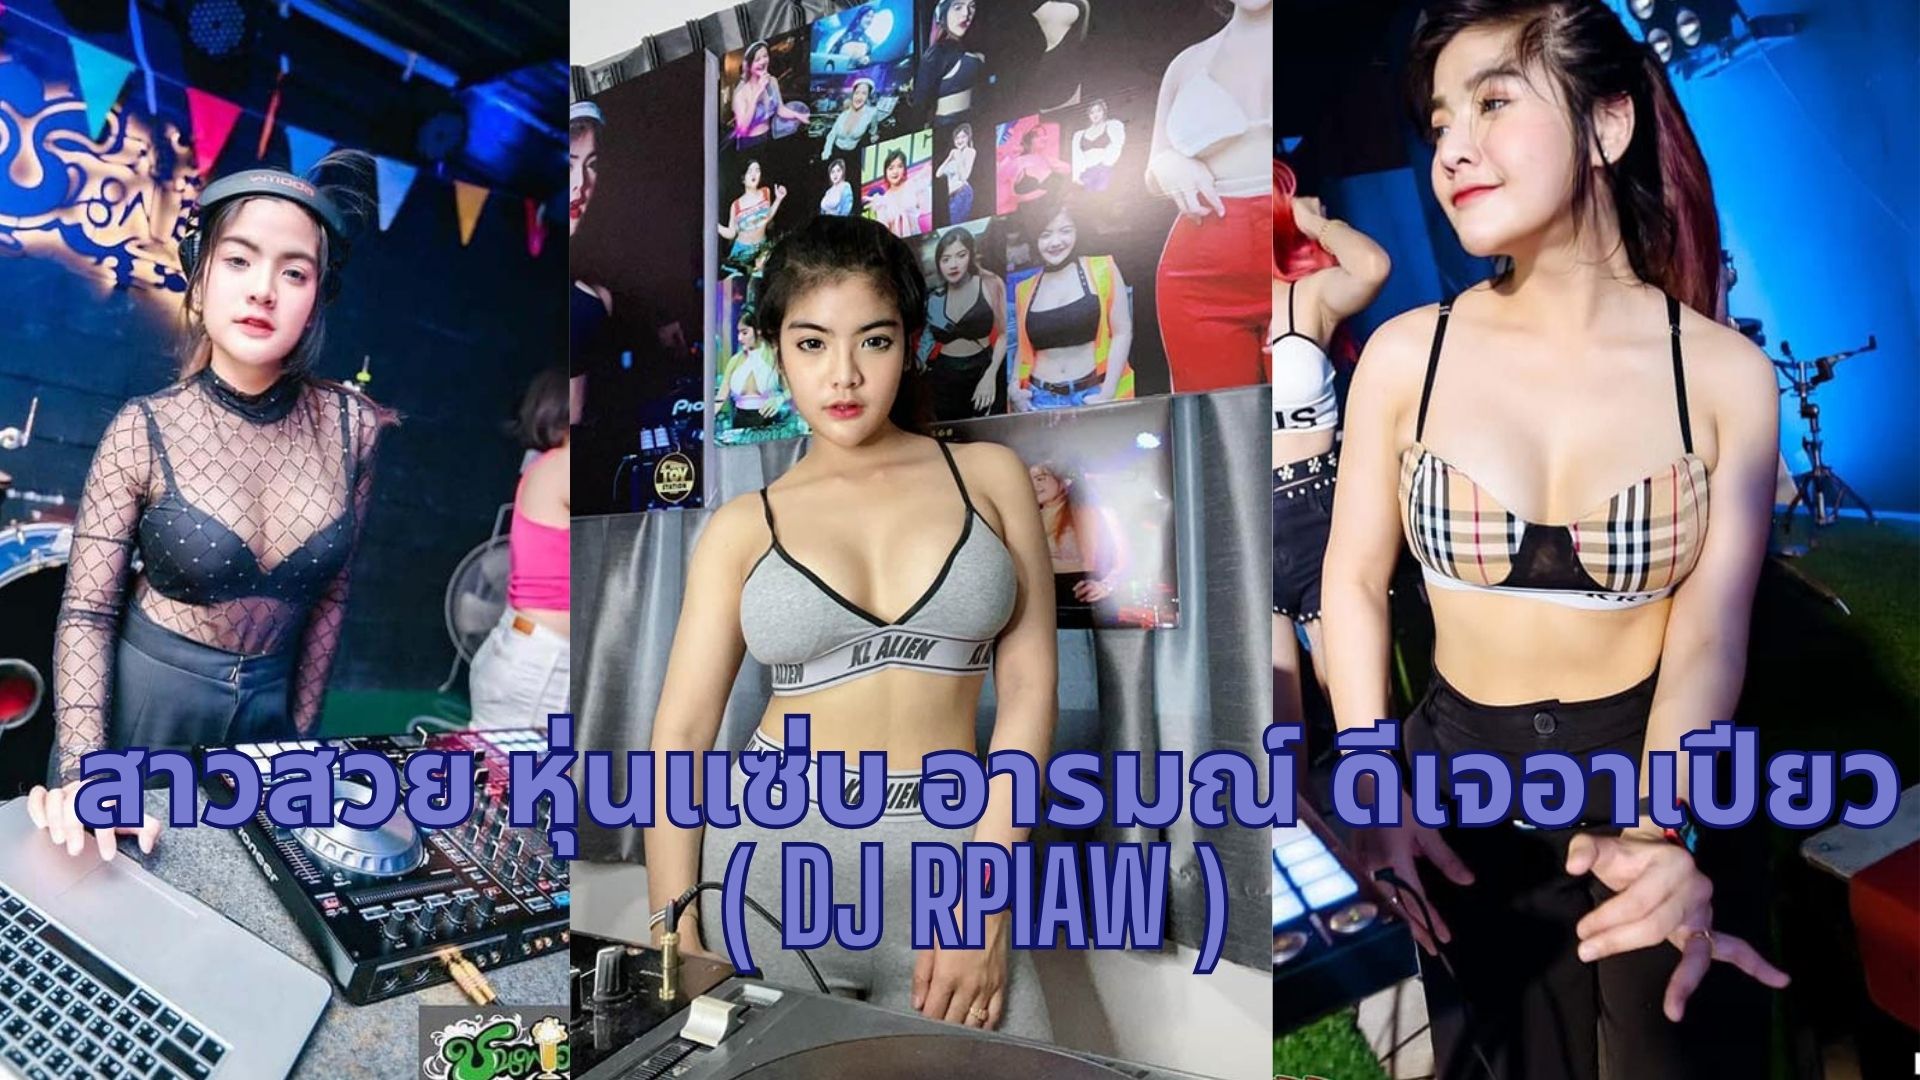 ดีเจอาเปียว ( DJ Rpiaw )